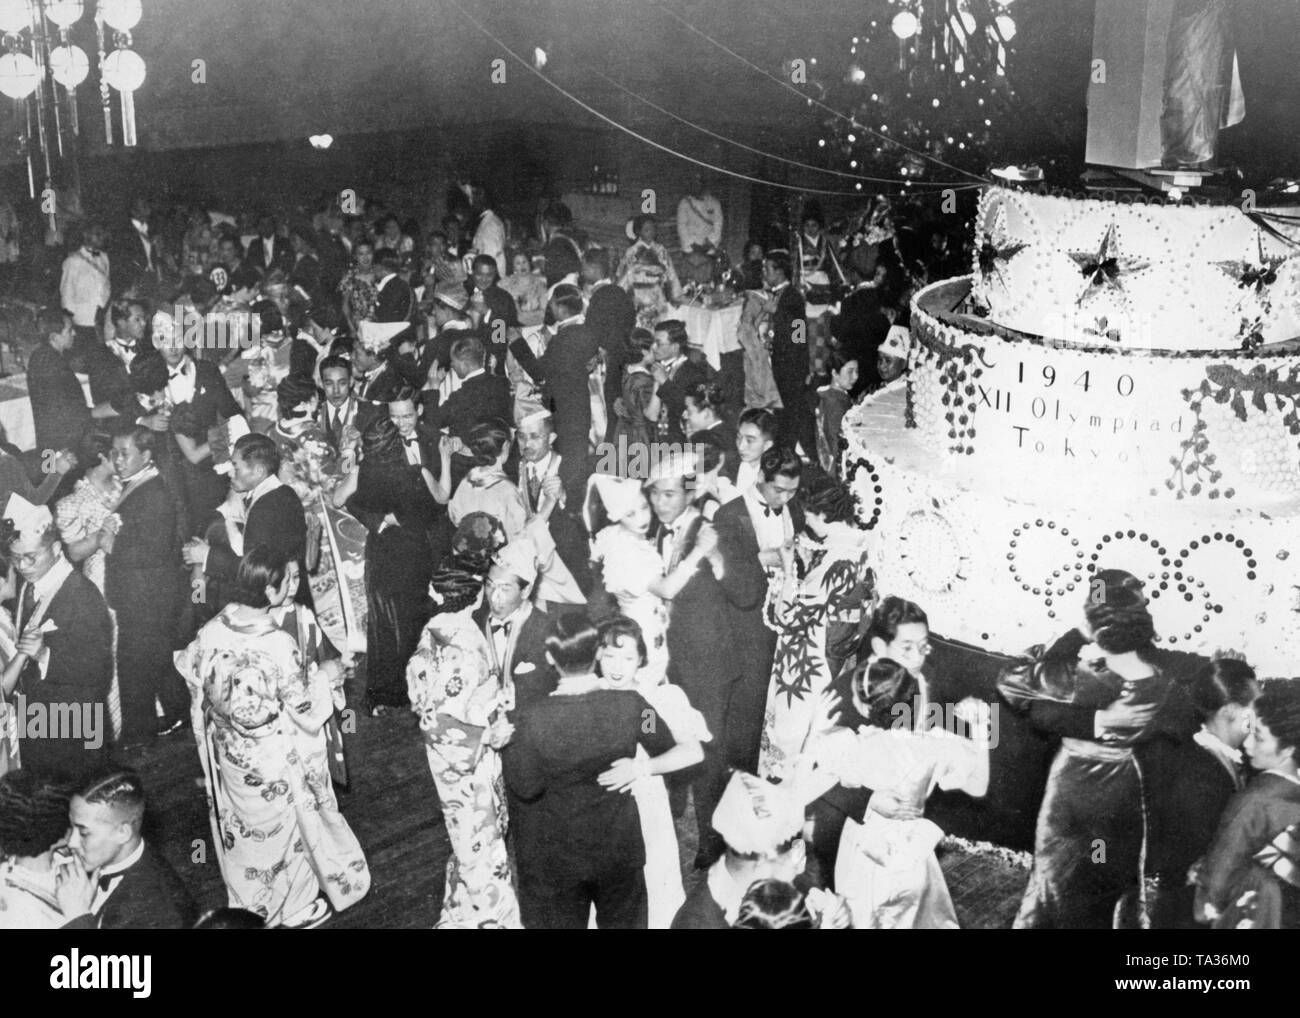 Blick über die tanzende Gäste von einer Weihnachtsfeier in Tokio. Auf der rechten Seite ist eine große Torte mit der Aufschrift "1940 XII Olympiade Tokio", die bevorstehenden Olympischen Spiele in Japan zu feiern. Stockfoto